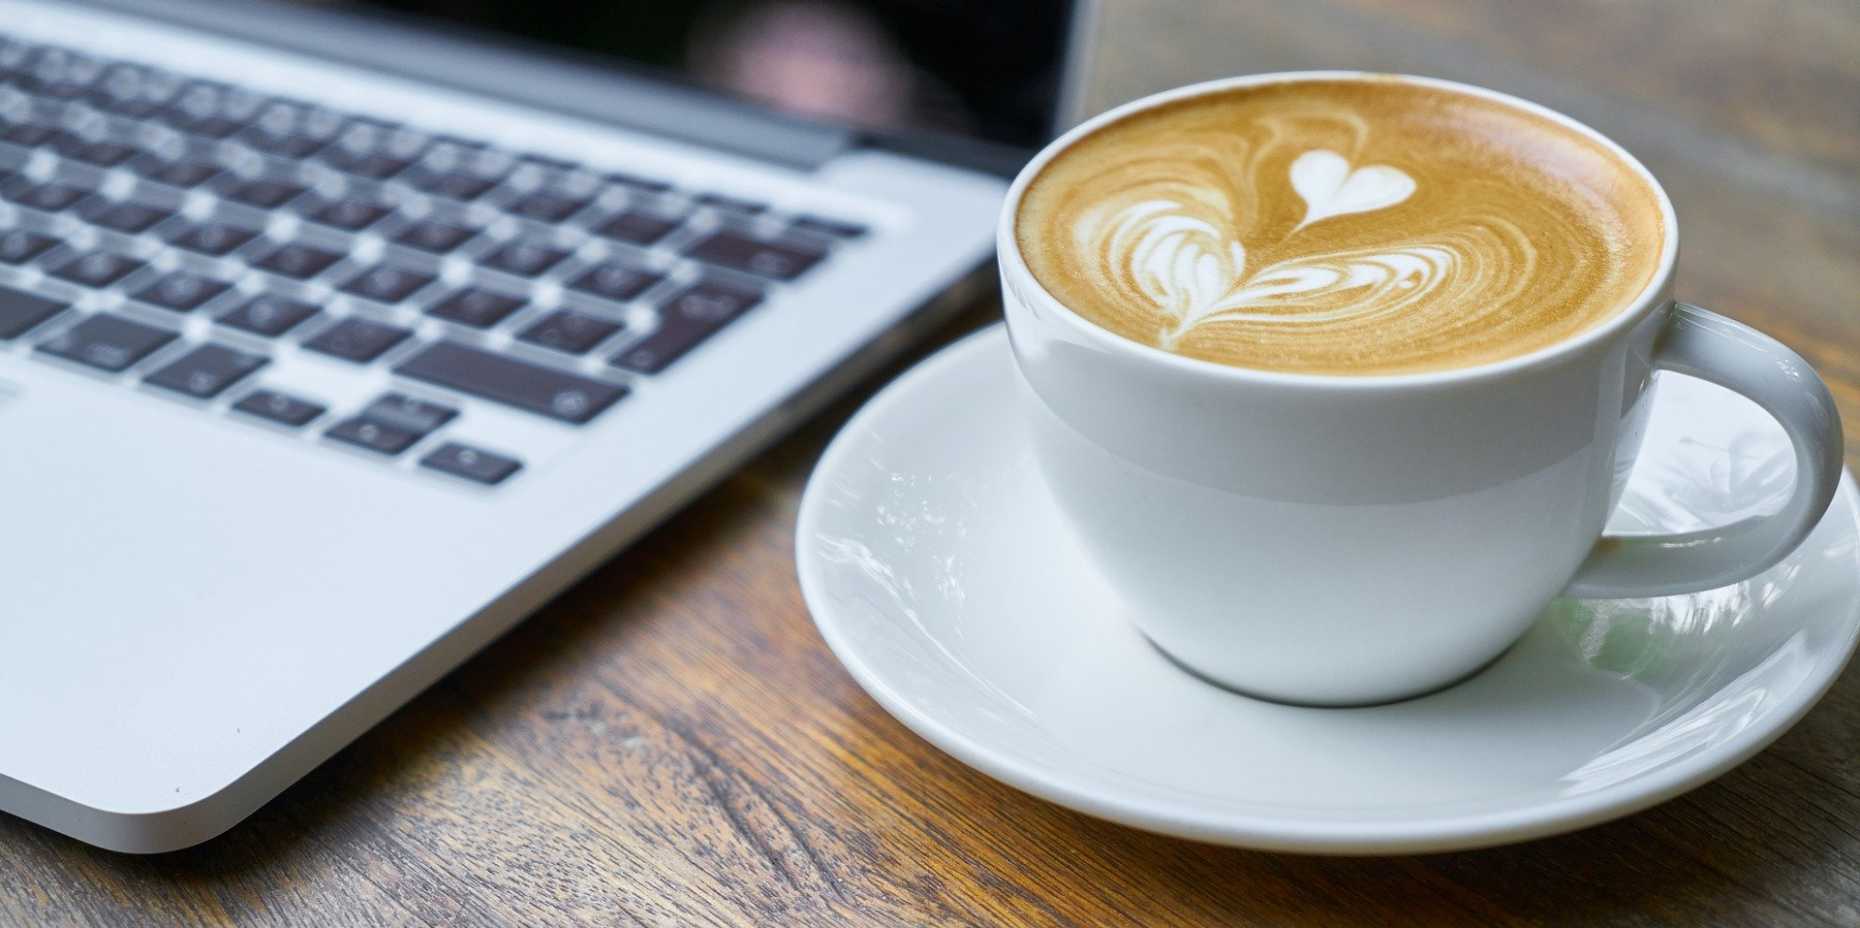 Kaffeetasse auf Holztisch neben MacBook